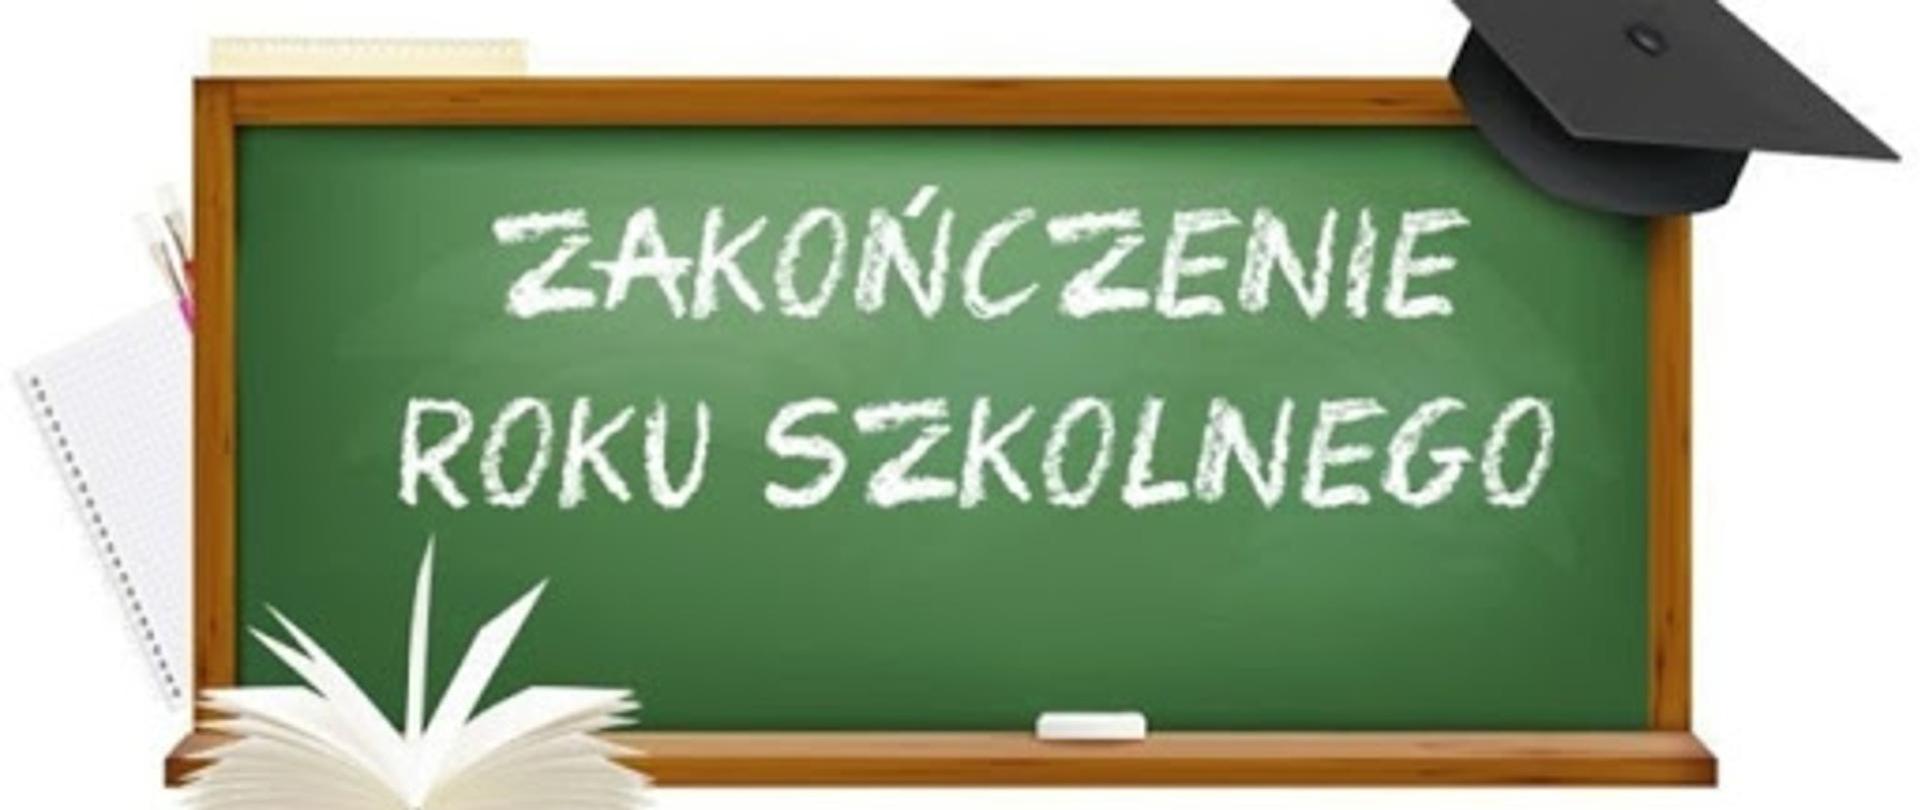 baner przedstawiający tablicę szkolną z napisem zakończenie rou szkolnego